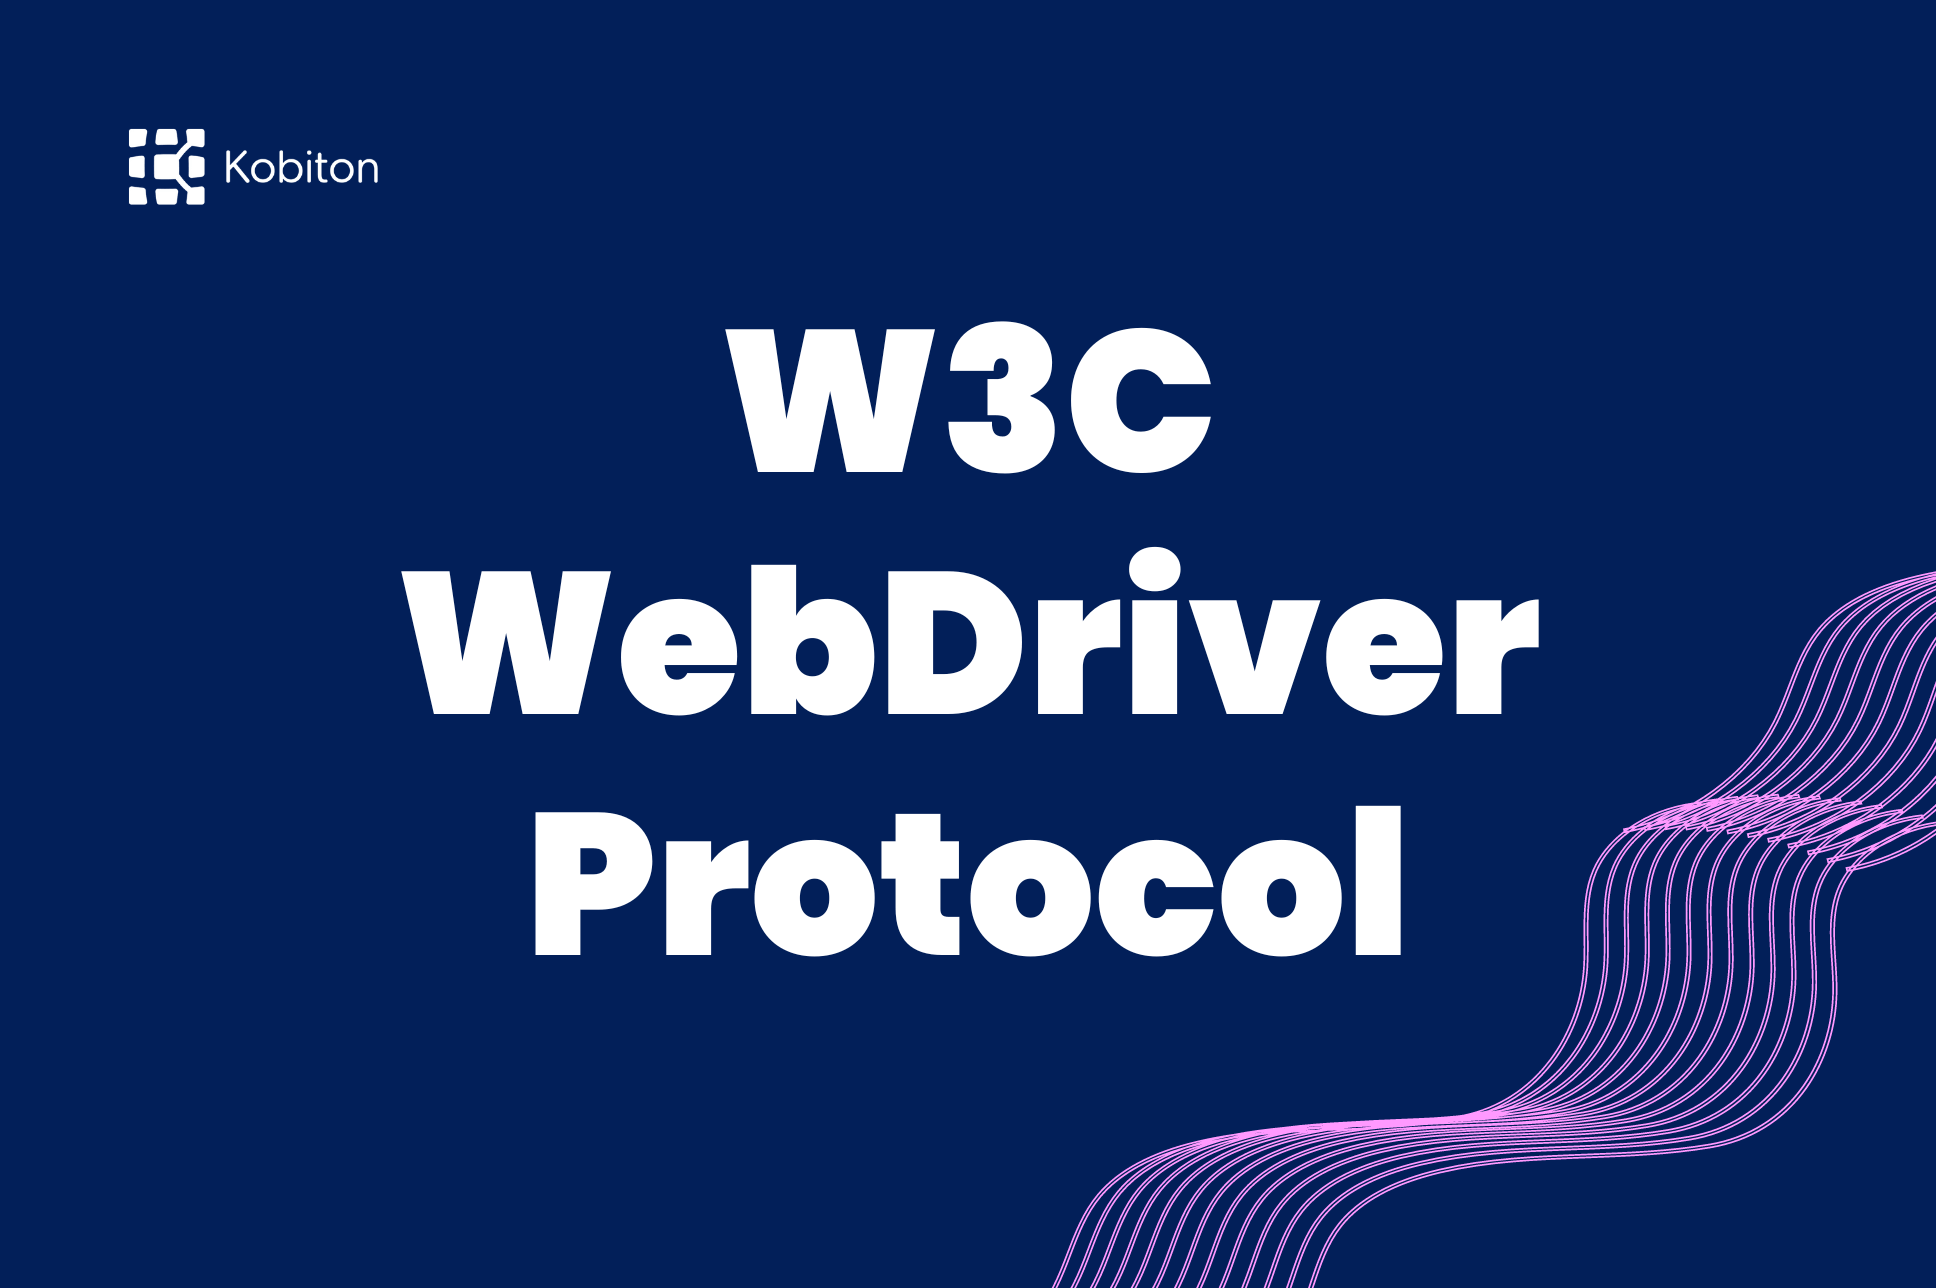 W3C WebDriver Protocol